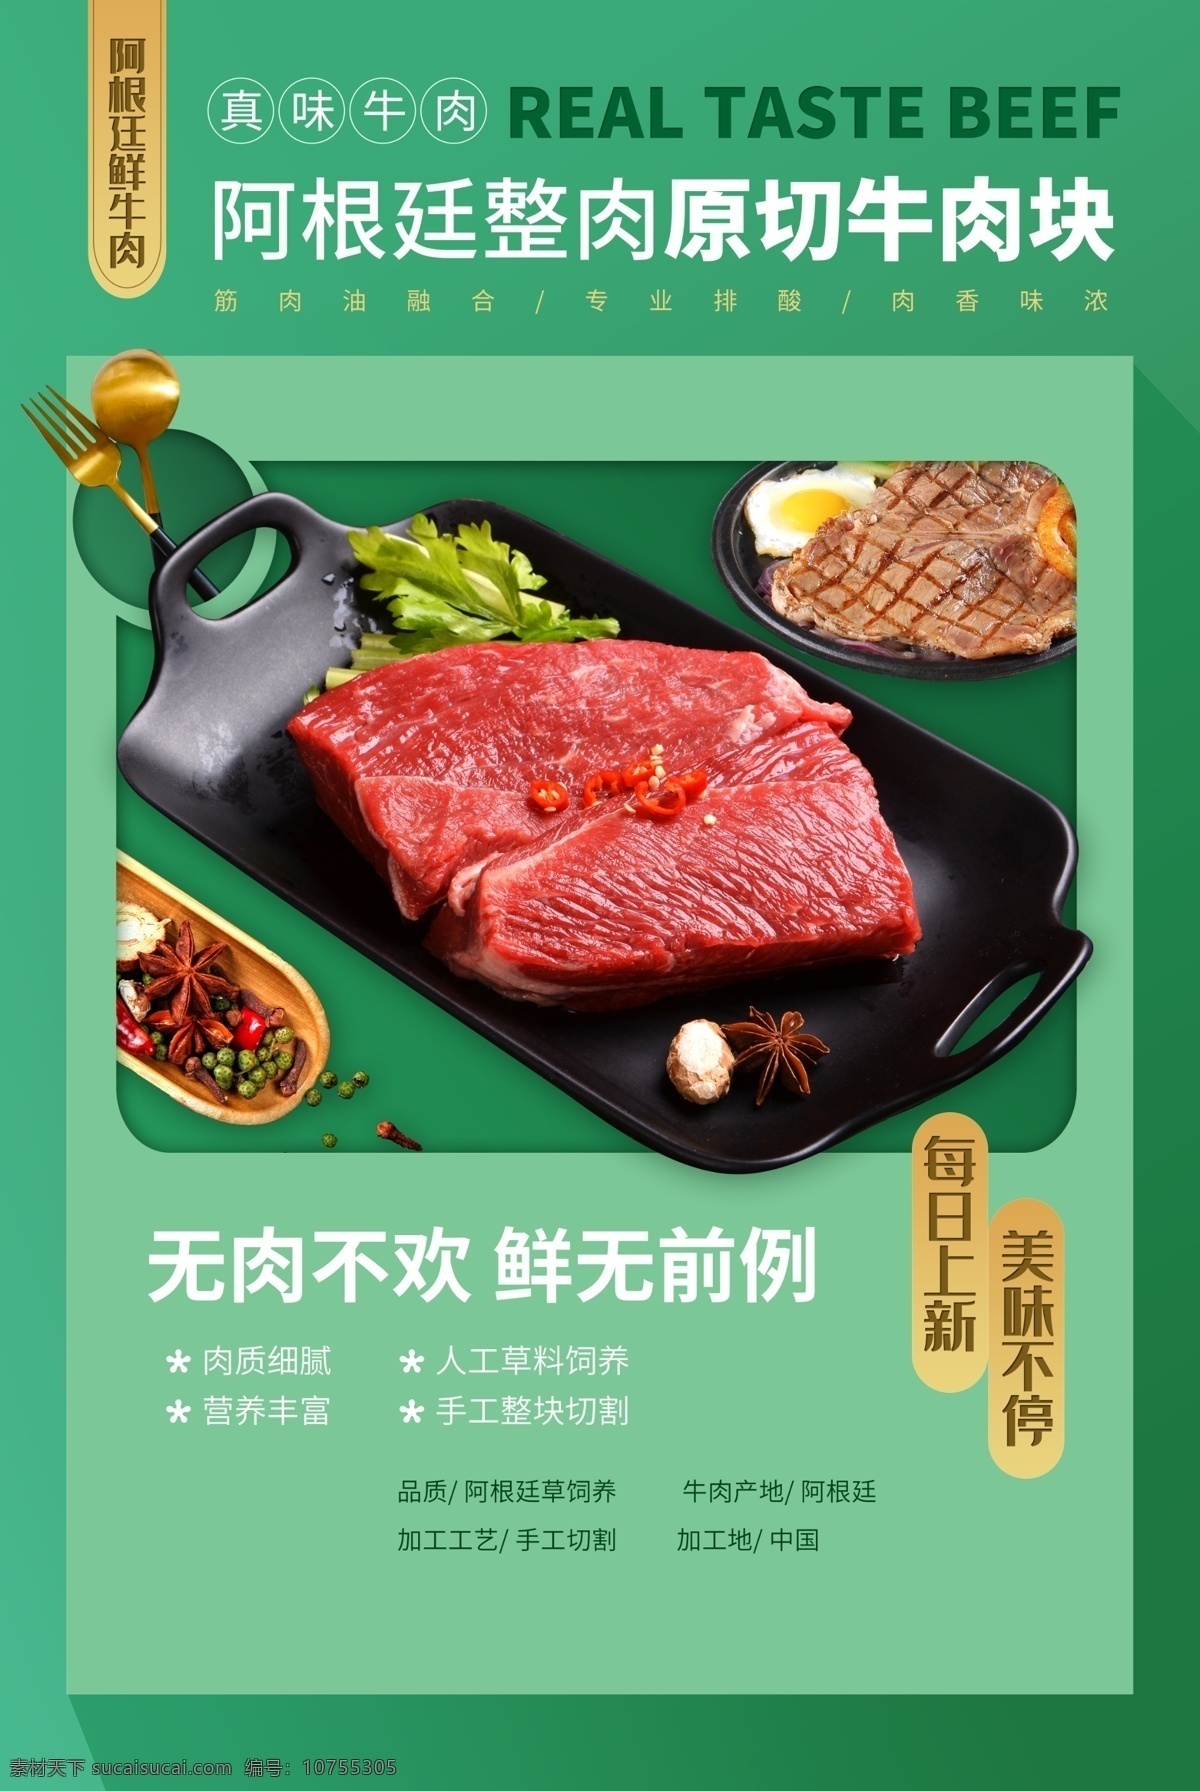 牛肉 块 美食 食 材 活动 宣传海报 牛肉块 食材 宣传 海报 餐饮美食 类